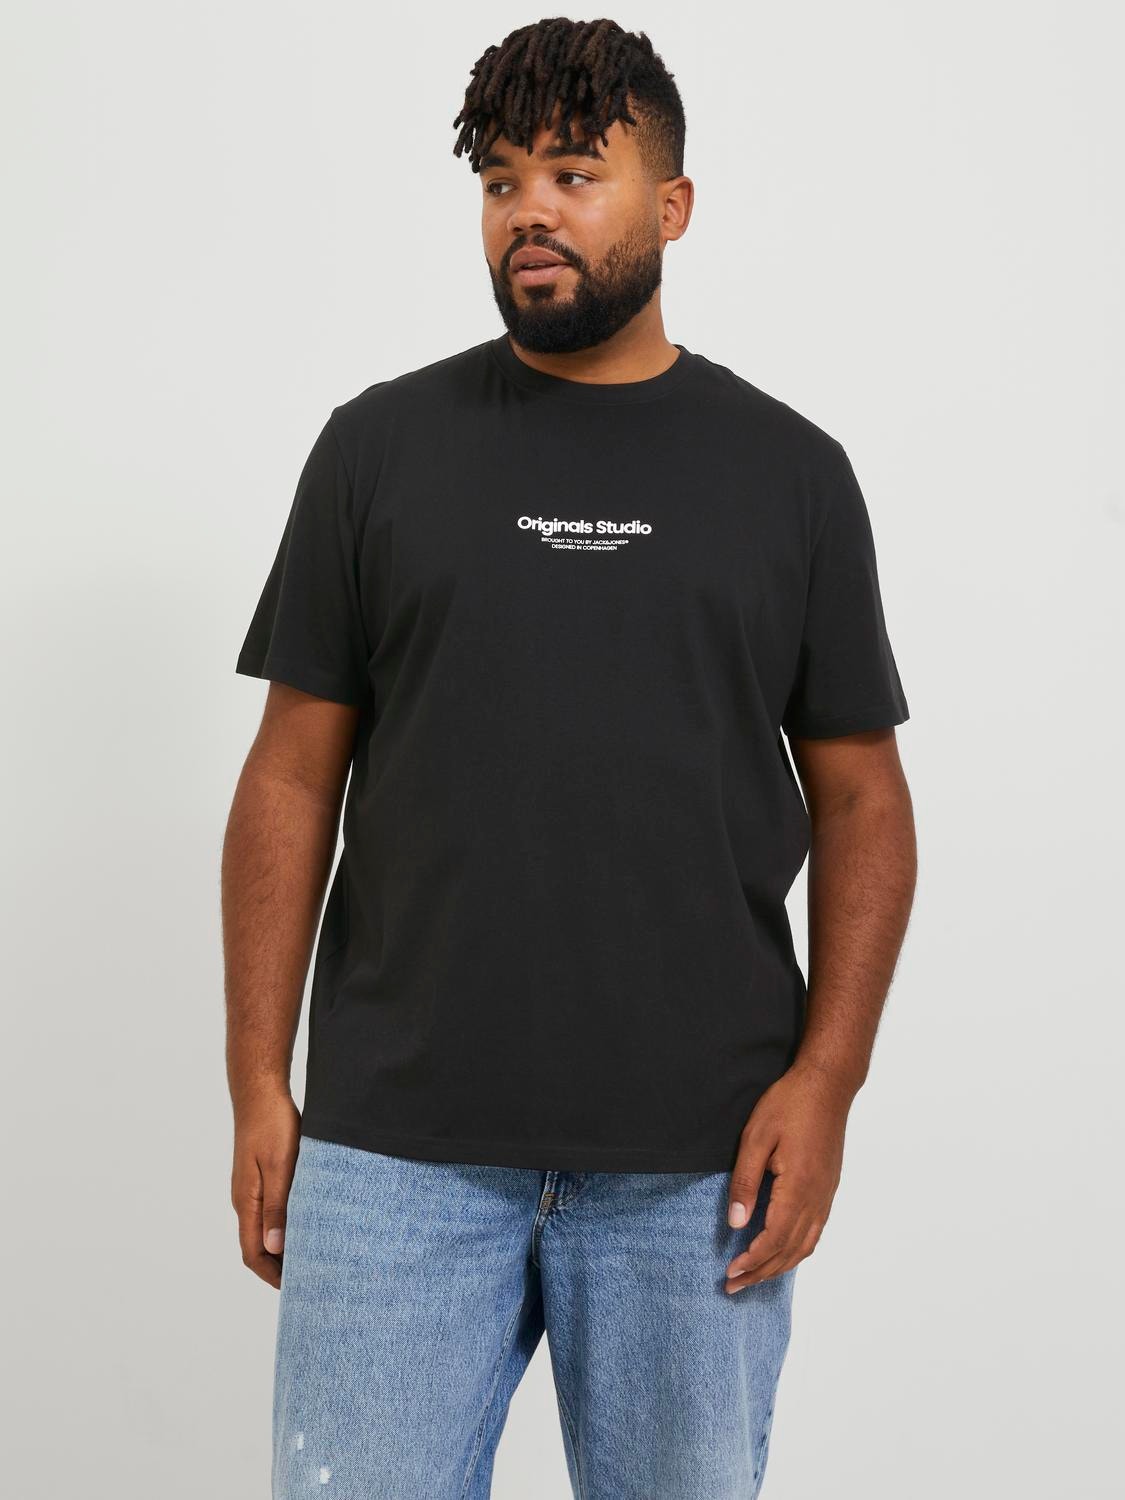 Jack & Jones Plus Size Nadruk T-shirt -Black - 12248177